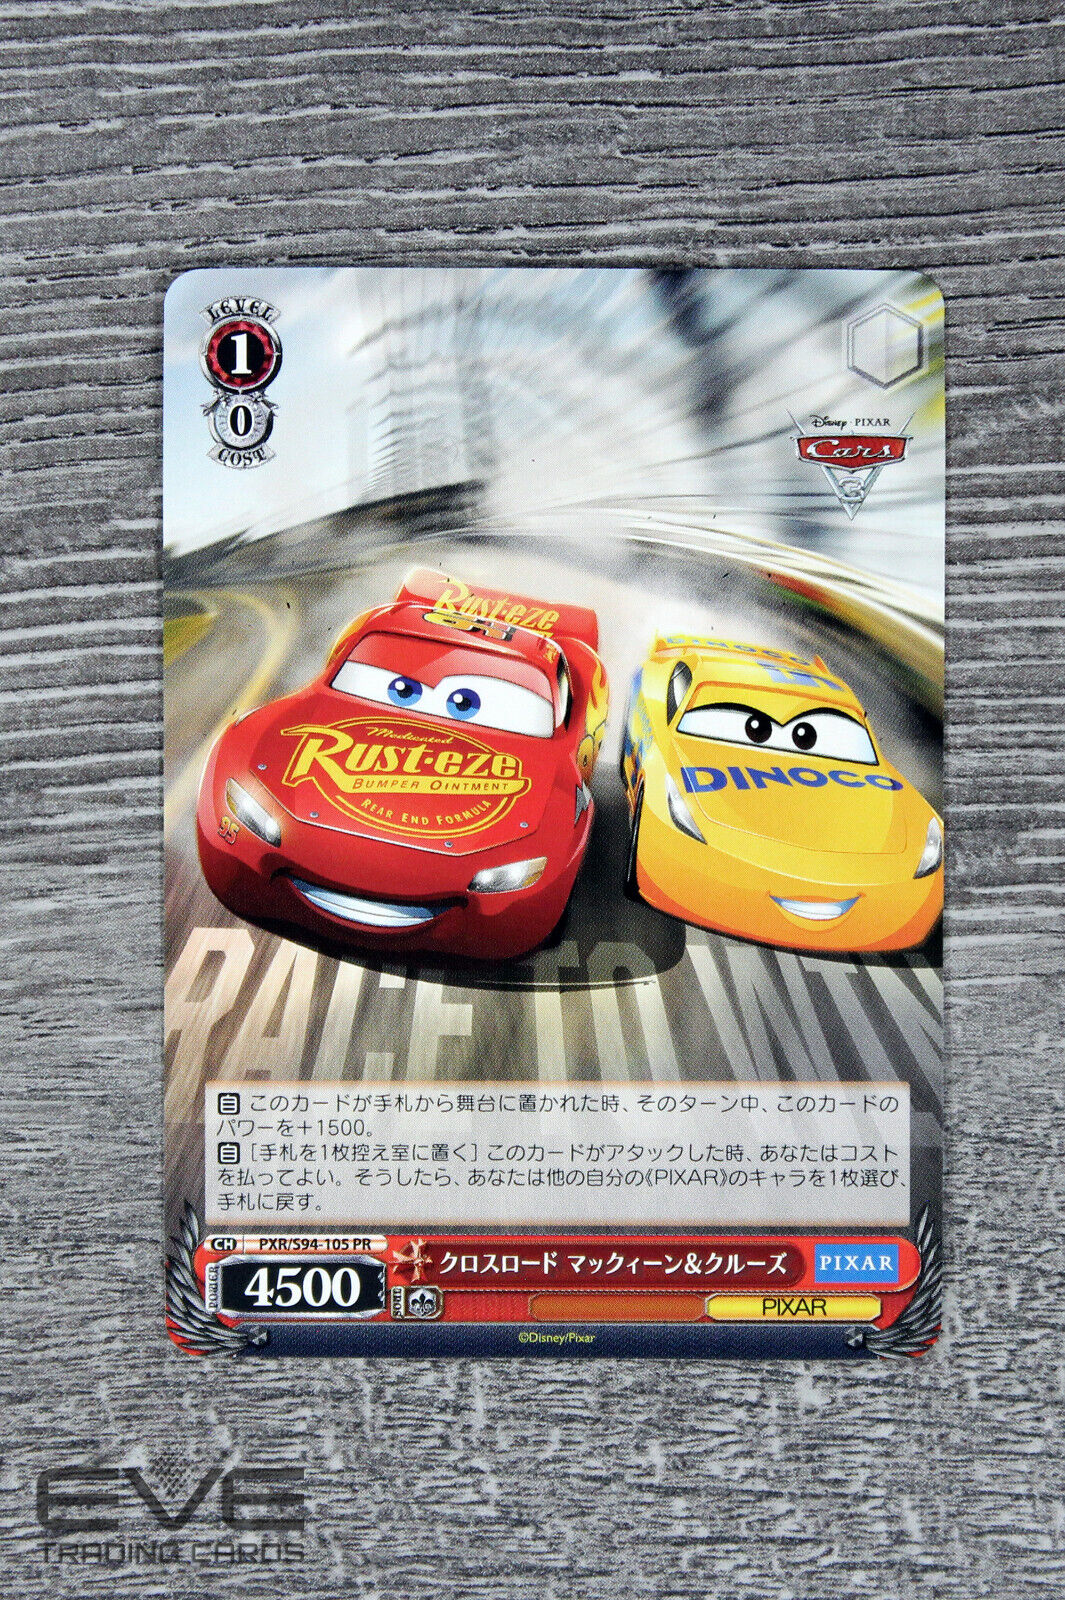 Weiss Schwarz Japan Pixar Card PXR/S94-105 PR "Crossroad McQueen & Cruise" NM/M